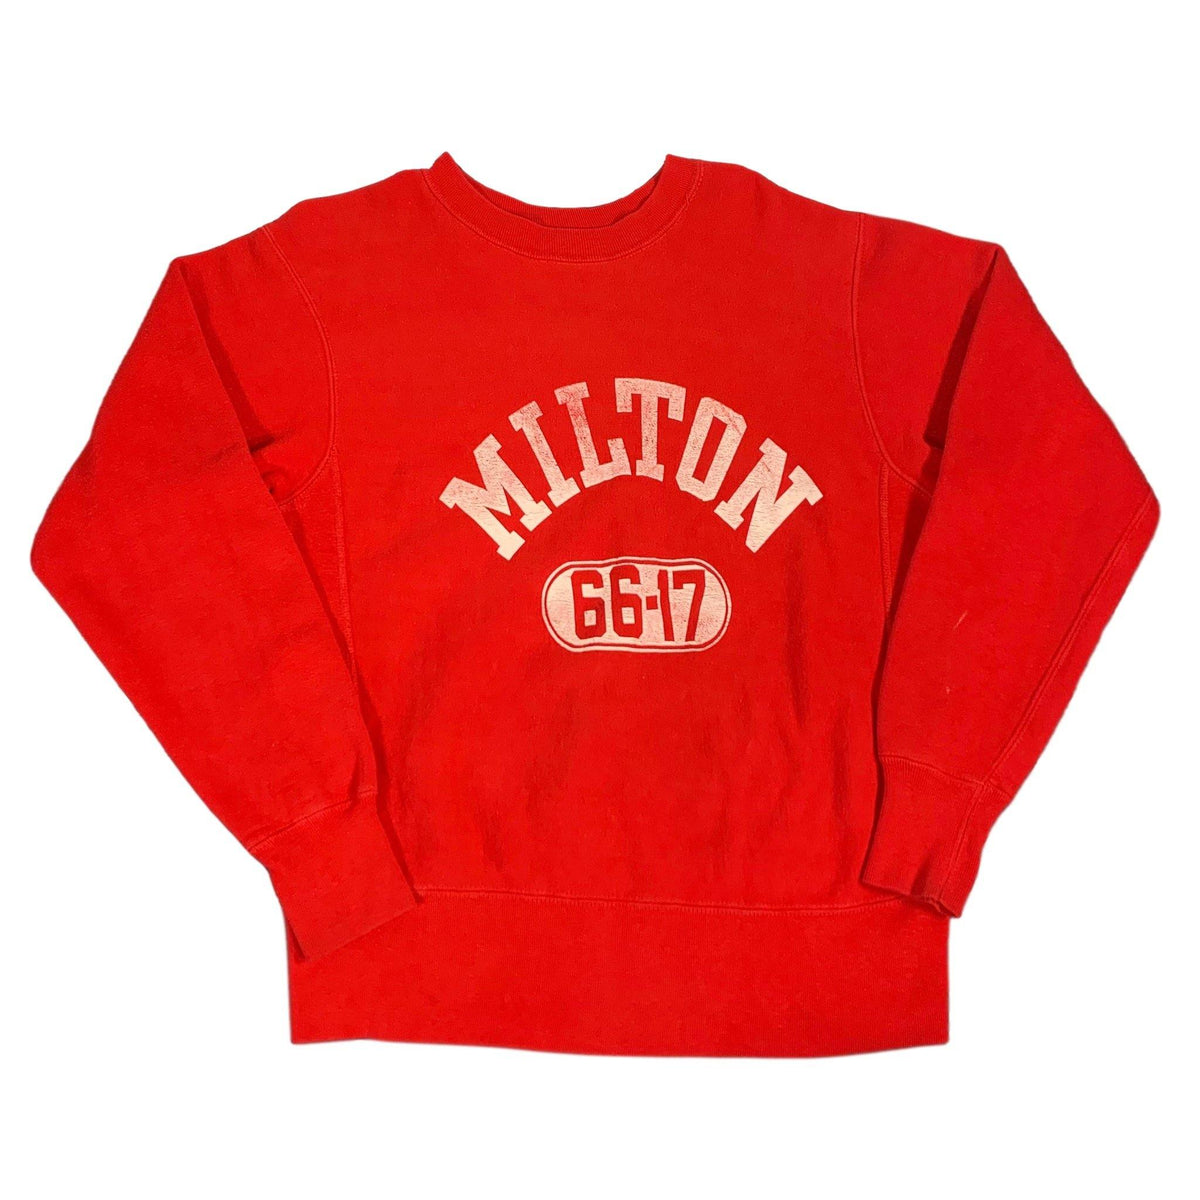 Vintage Champion Knitwear Co. Reverse Weave &quot;Milton 66-17&quot; Crewneck Sweatshirt - jointcustodydc